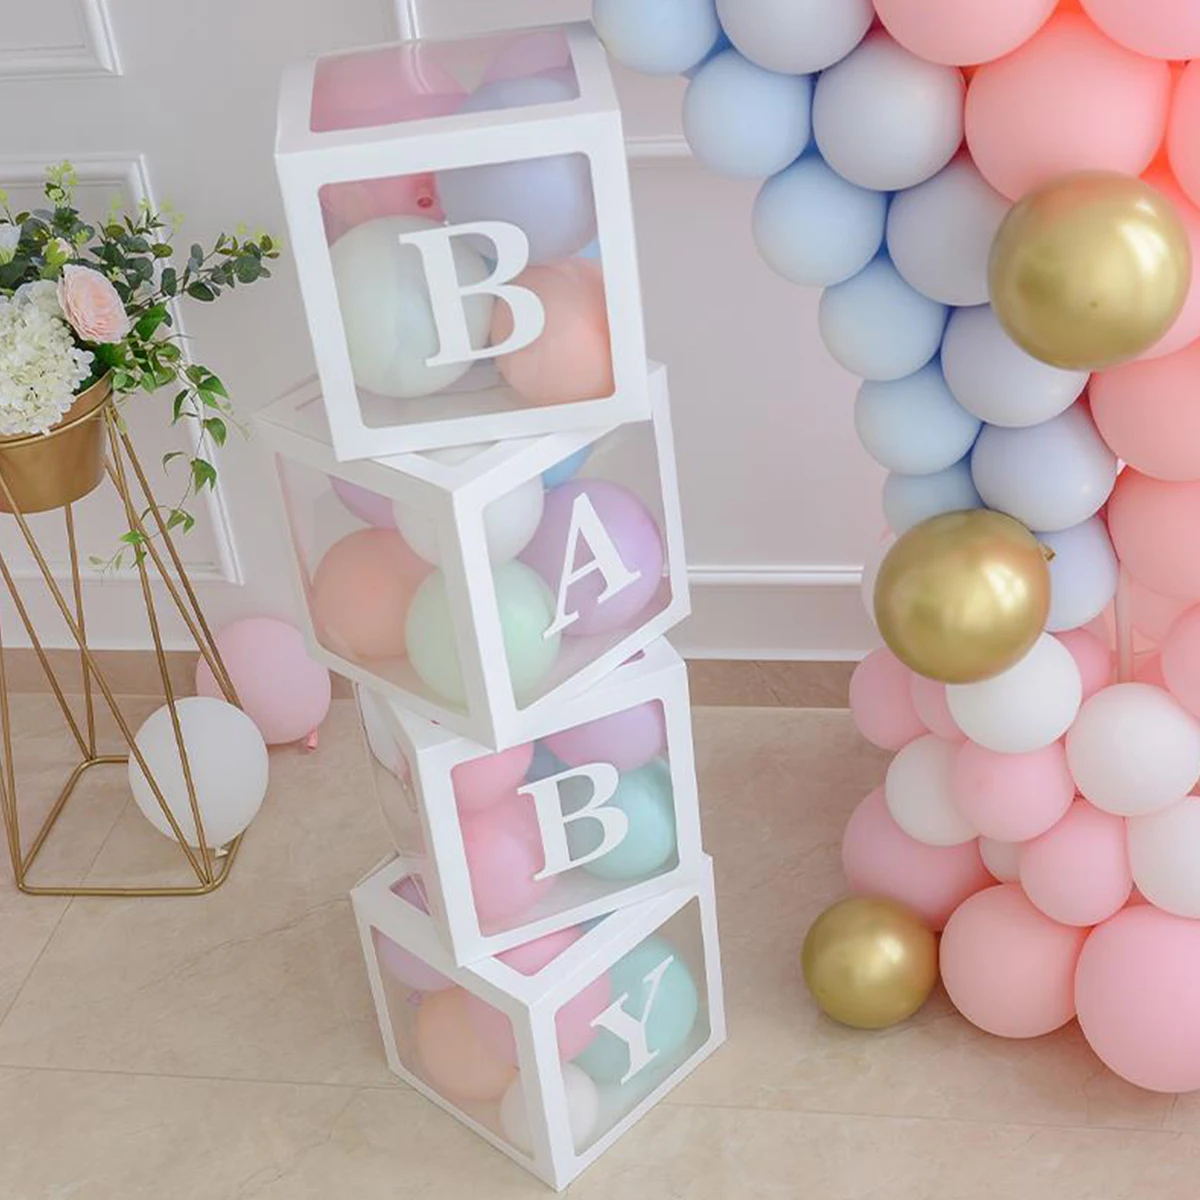 Kotak Pancuran bayi huruf transparan pernikahan ulang tahun kotak balon nama khusus dekorasi pesta ulang tahun pertama anak laki-laki perempuan